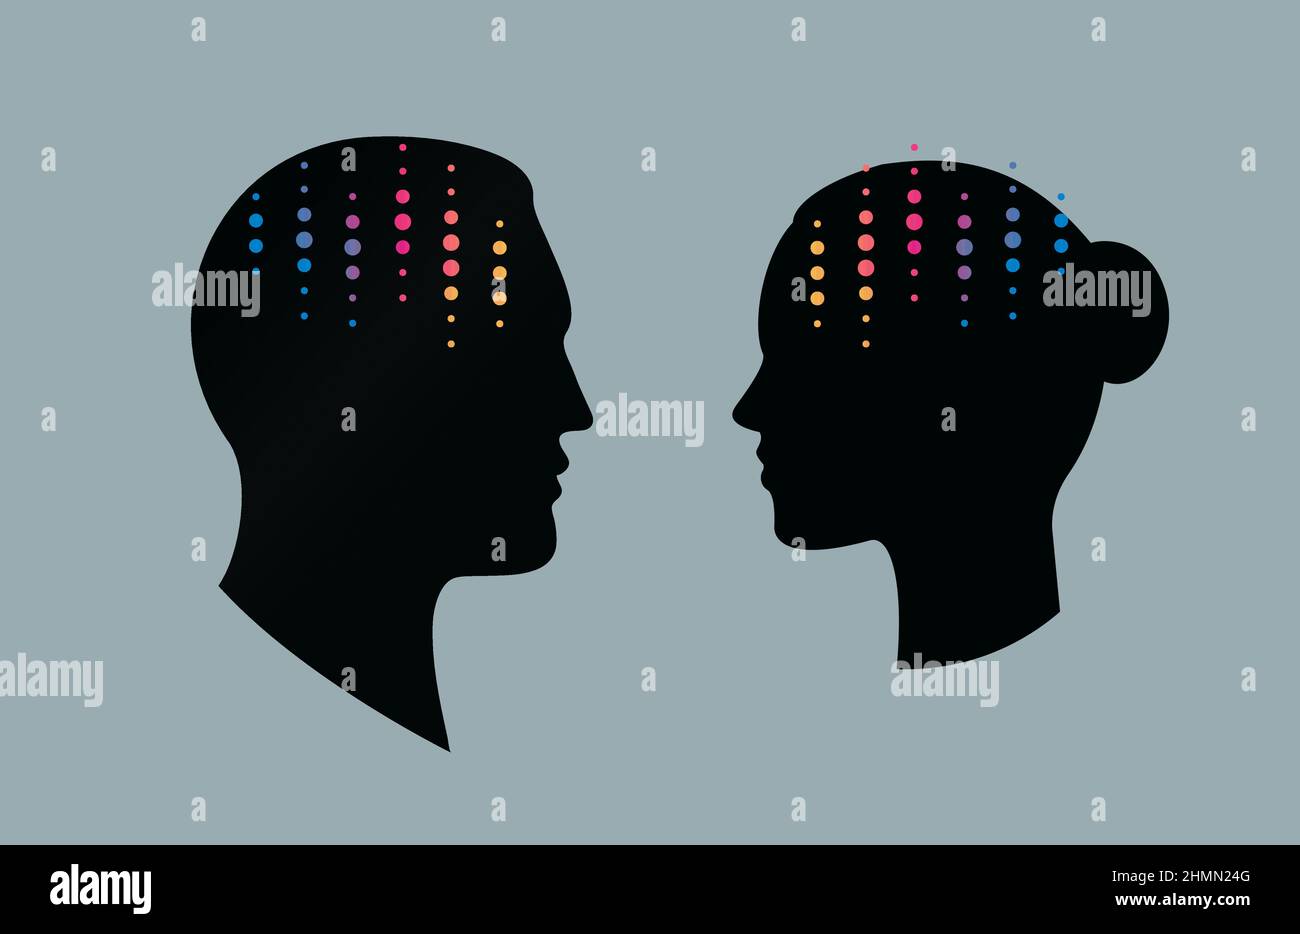 Profilo della testa della persona con simbolo dell'equalizzatore, segno astratto dell'impulso neurale, icona della libreria musicale, laboratorio di ricerca cerebrale, logo della tecnologia audio Illustrazione Vettoriale